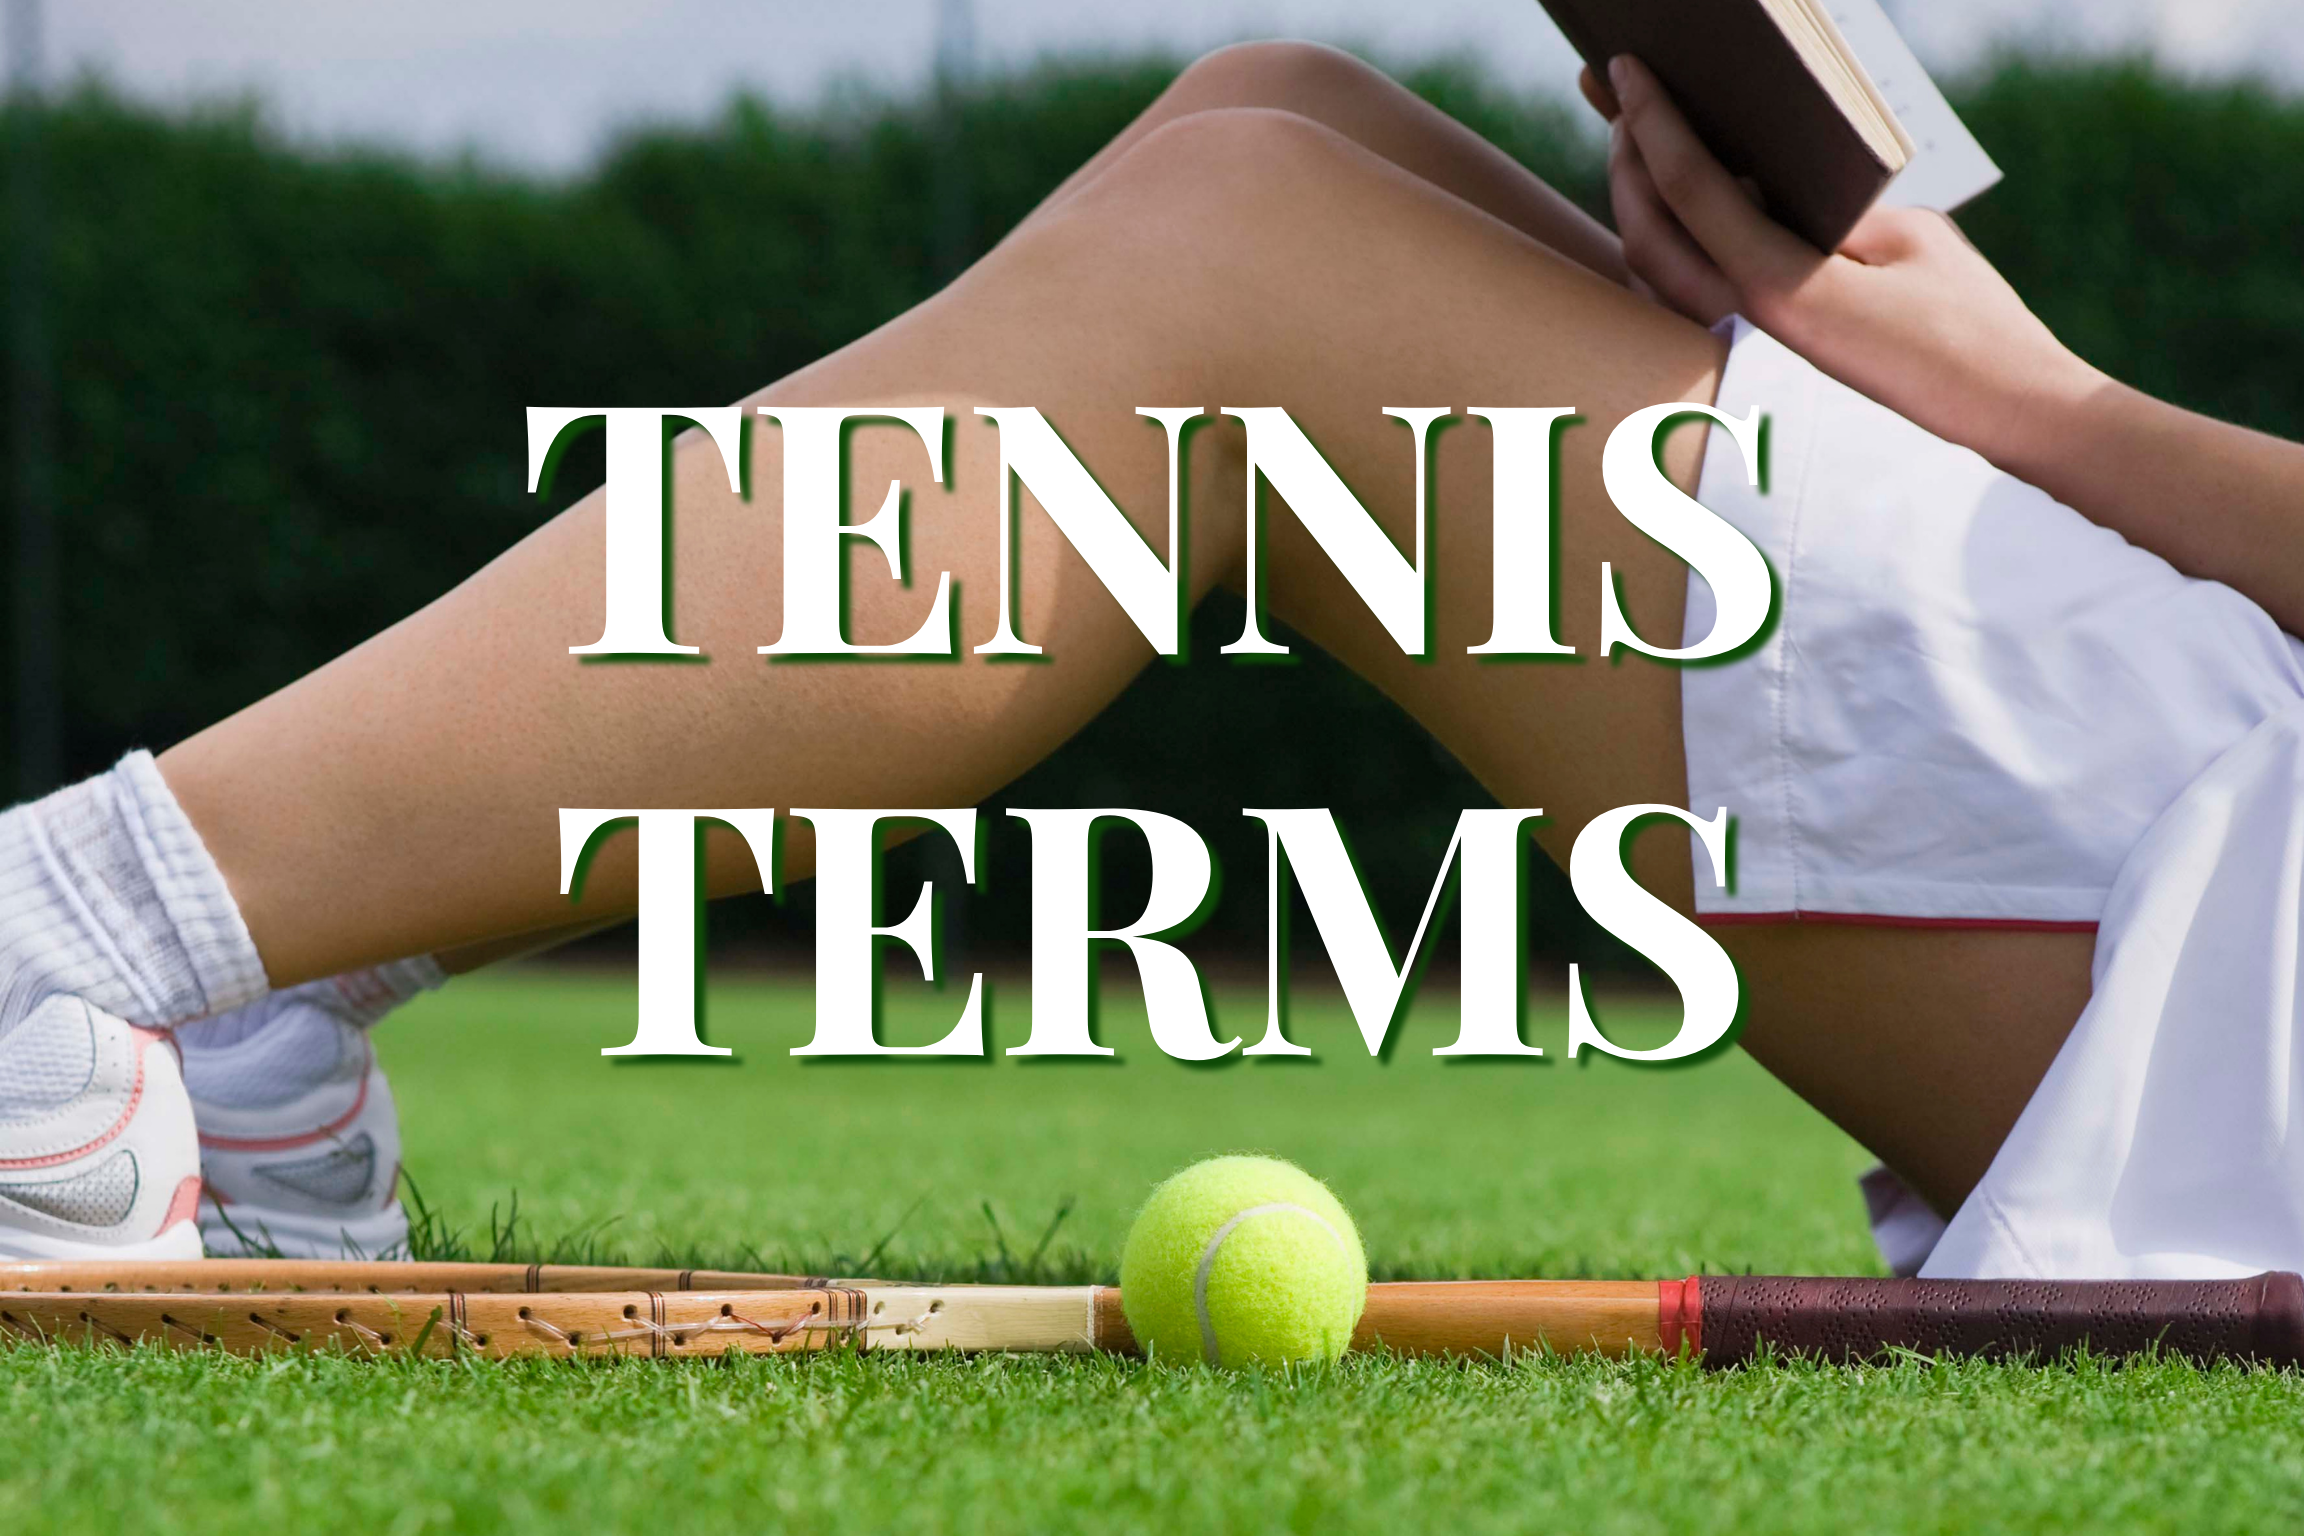 Tennis Terms